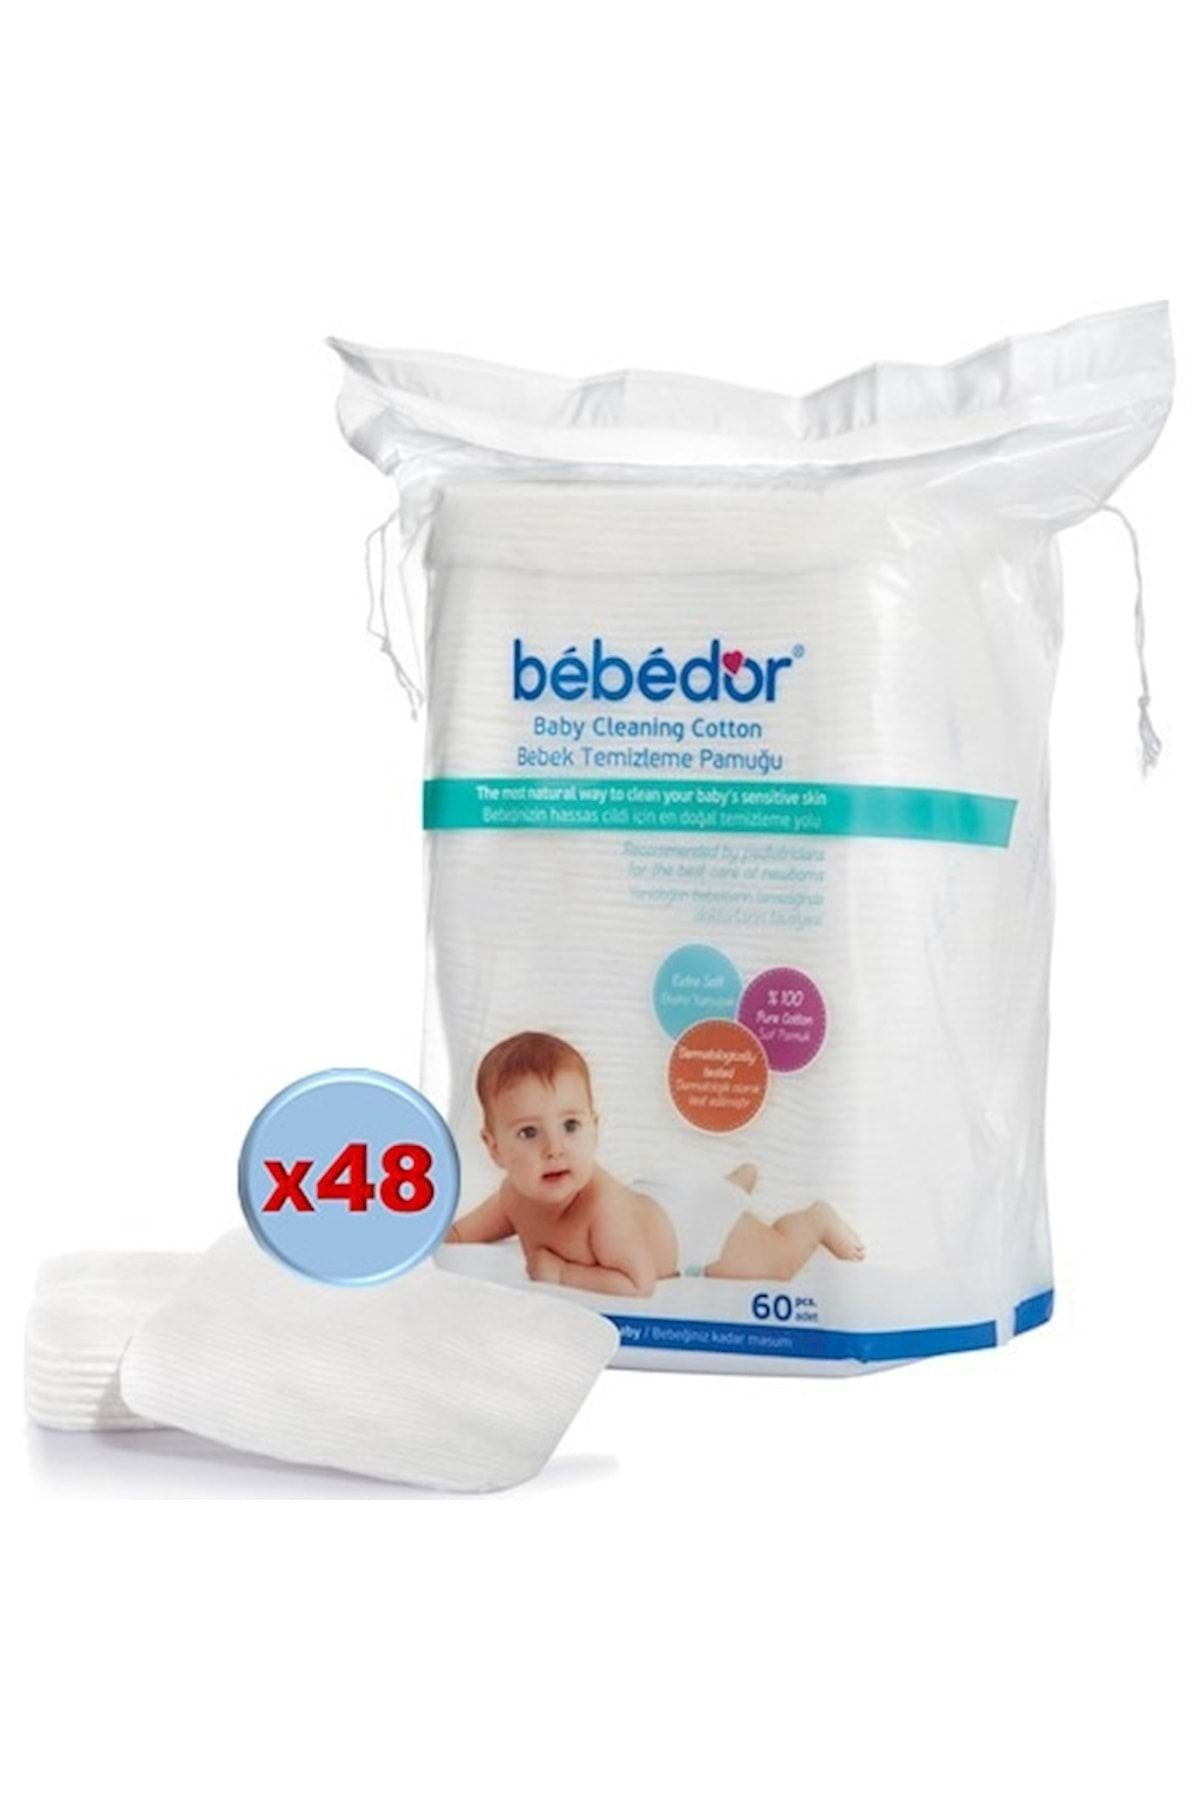 Bebedor Bebek Temizleme Pamuğu 2880 Adet (48pk*60)